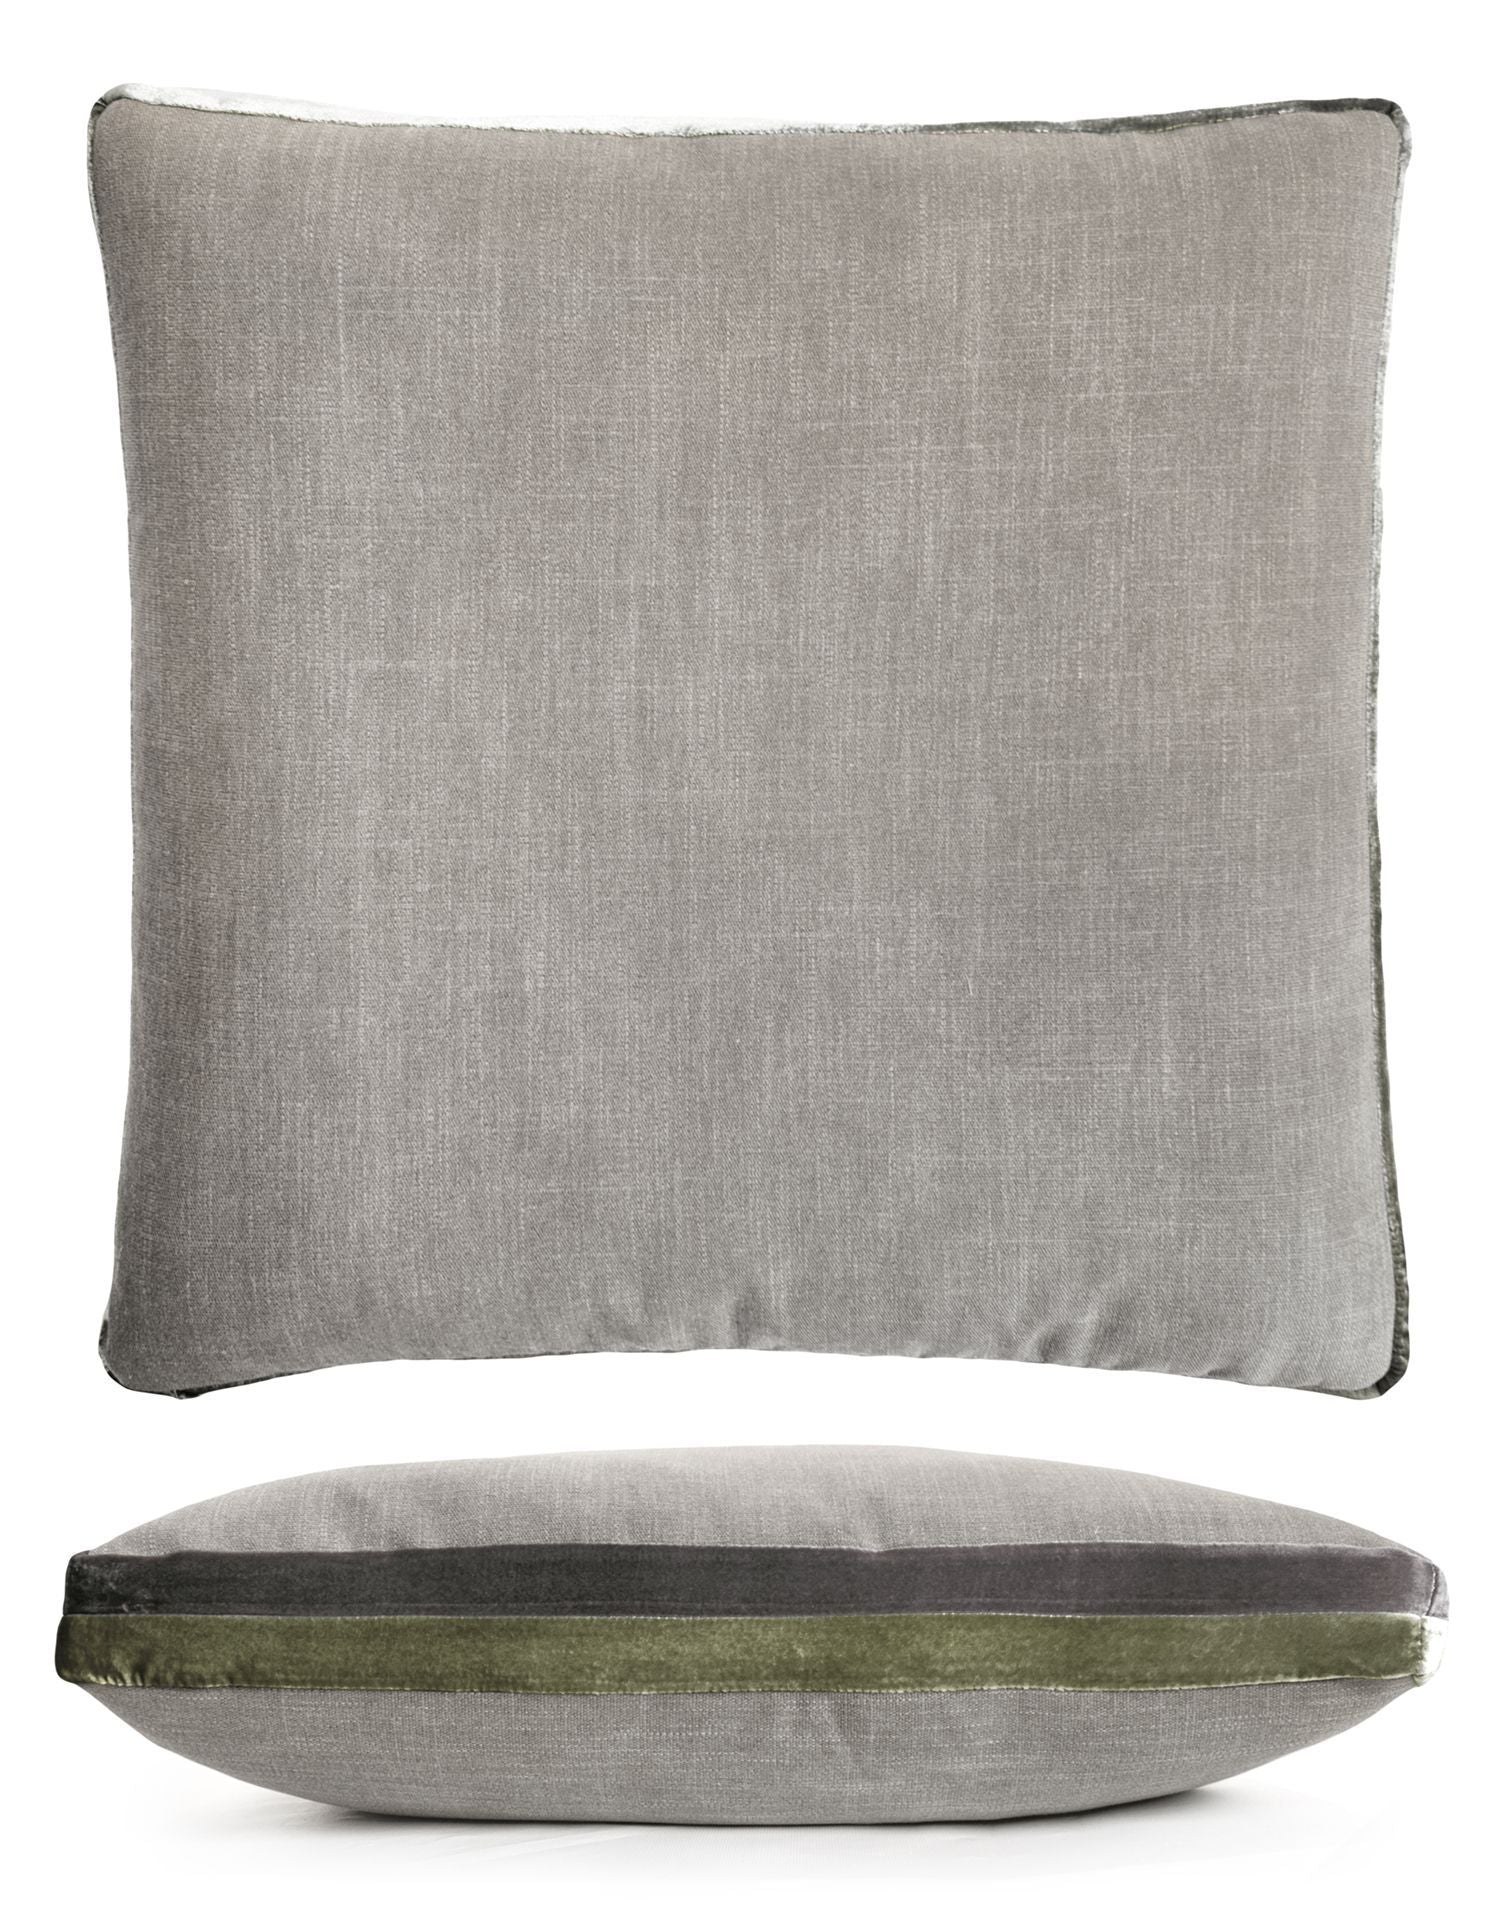 Oregano Double Tuxedo Square Pillow by Kevin O'Brien Studio | Fig Linens